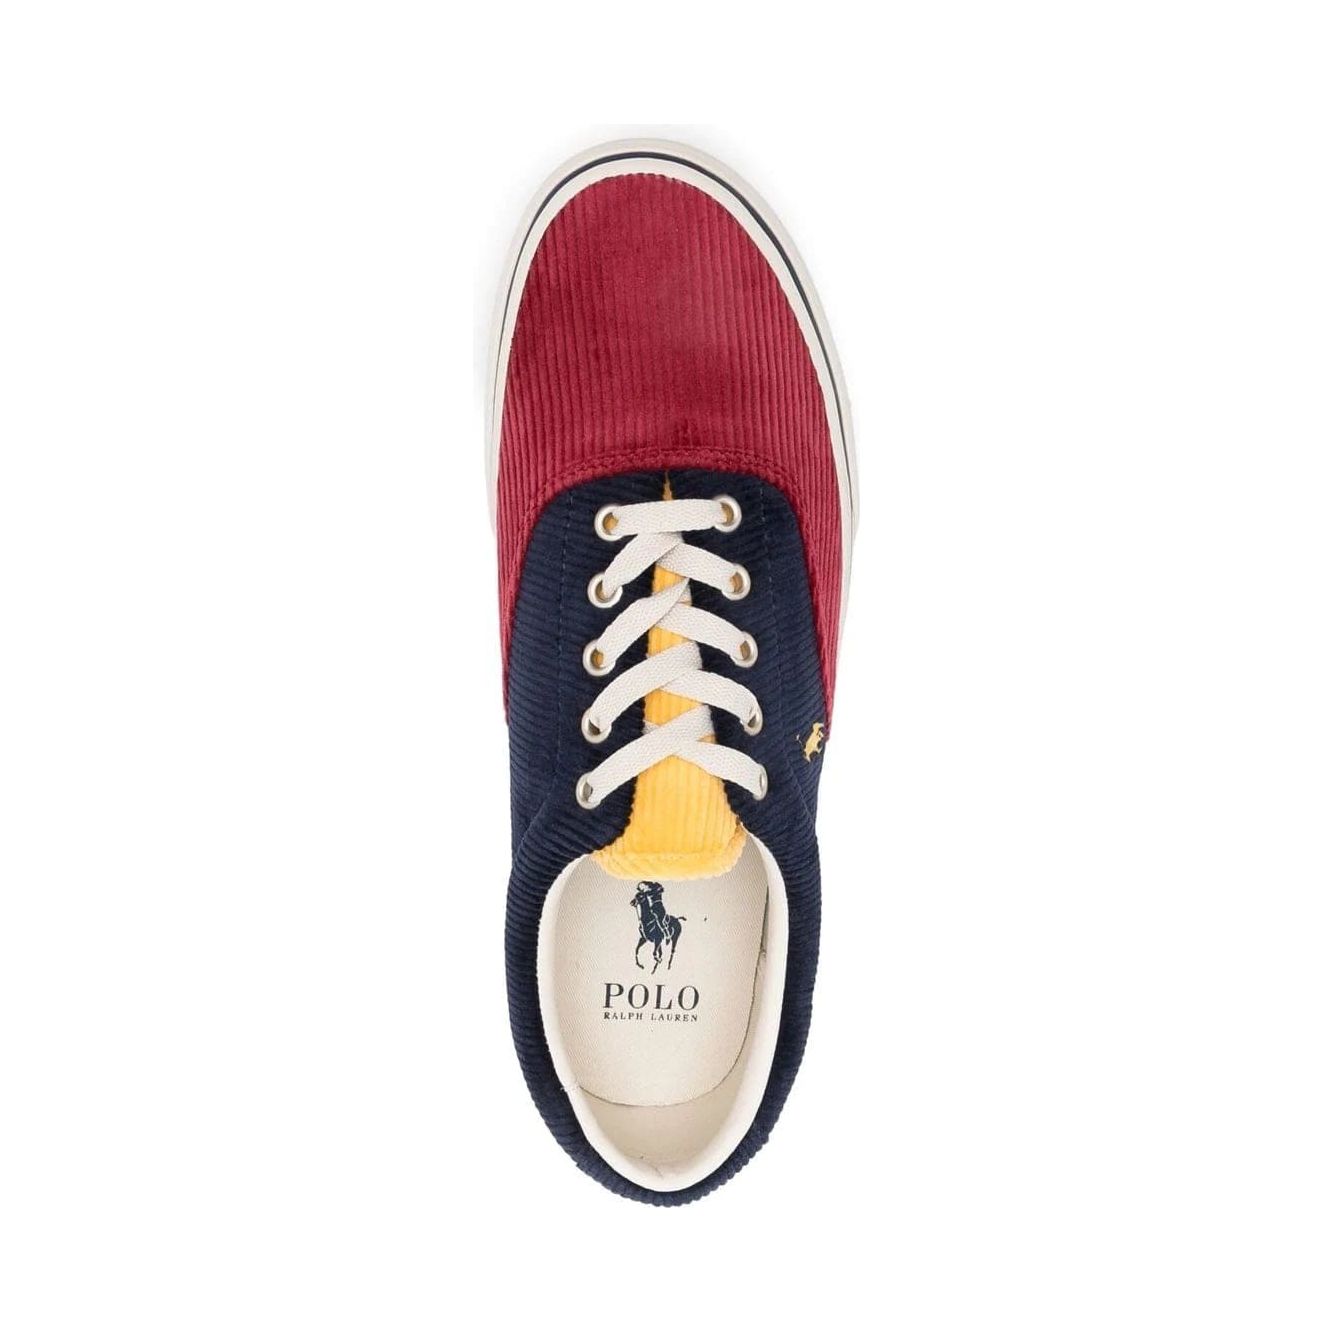 Polo Ralph Lauren sneakers - Yooto